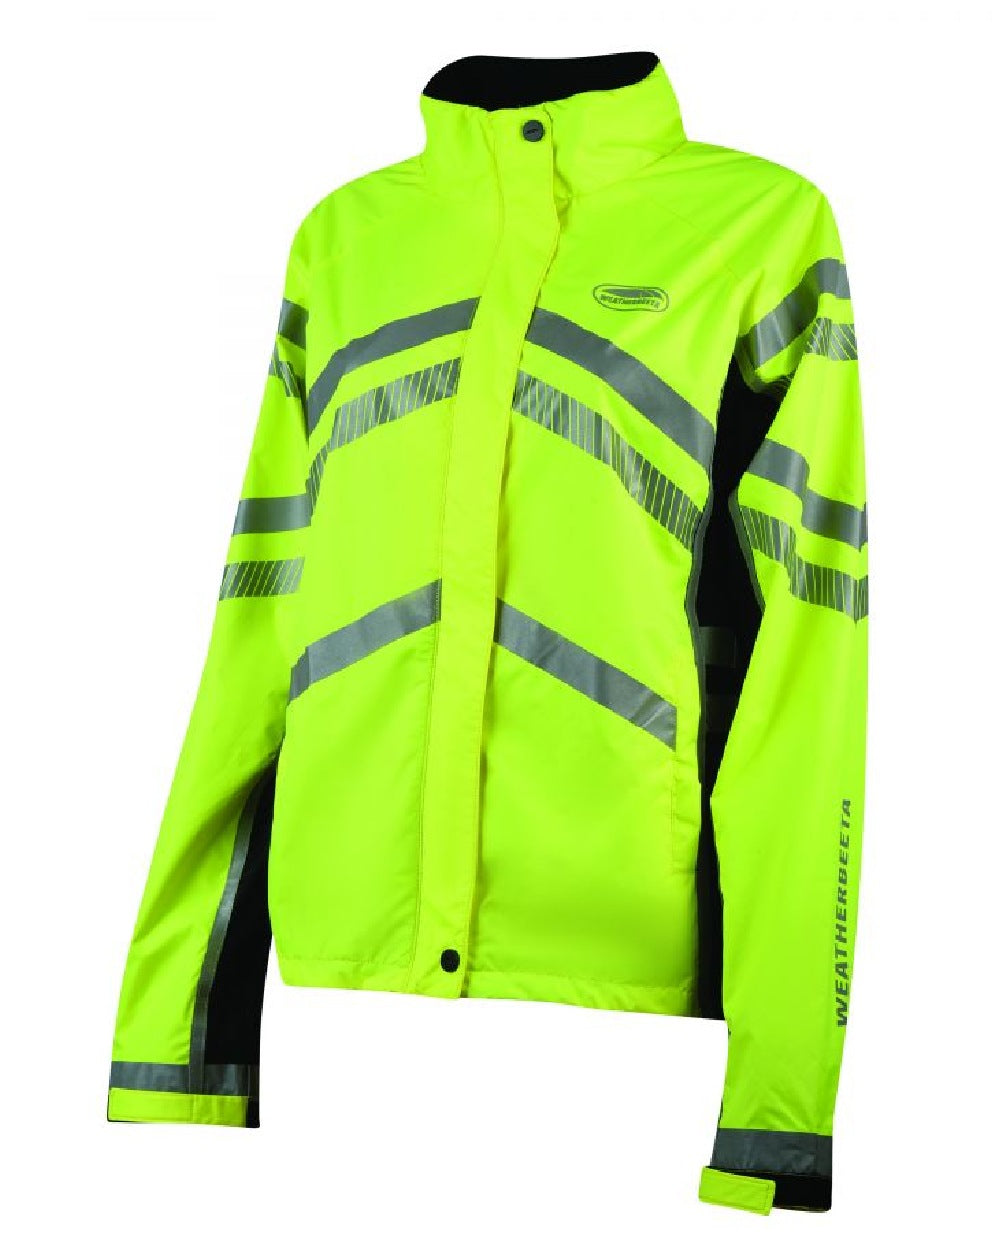 WeatherBeeta Reflective Lightweight Waterproof Jacket in Hi Vis Yellow 